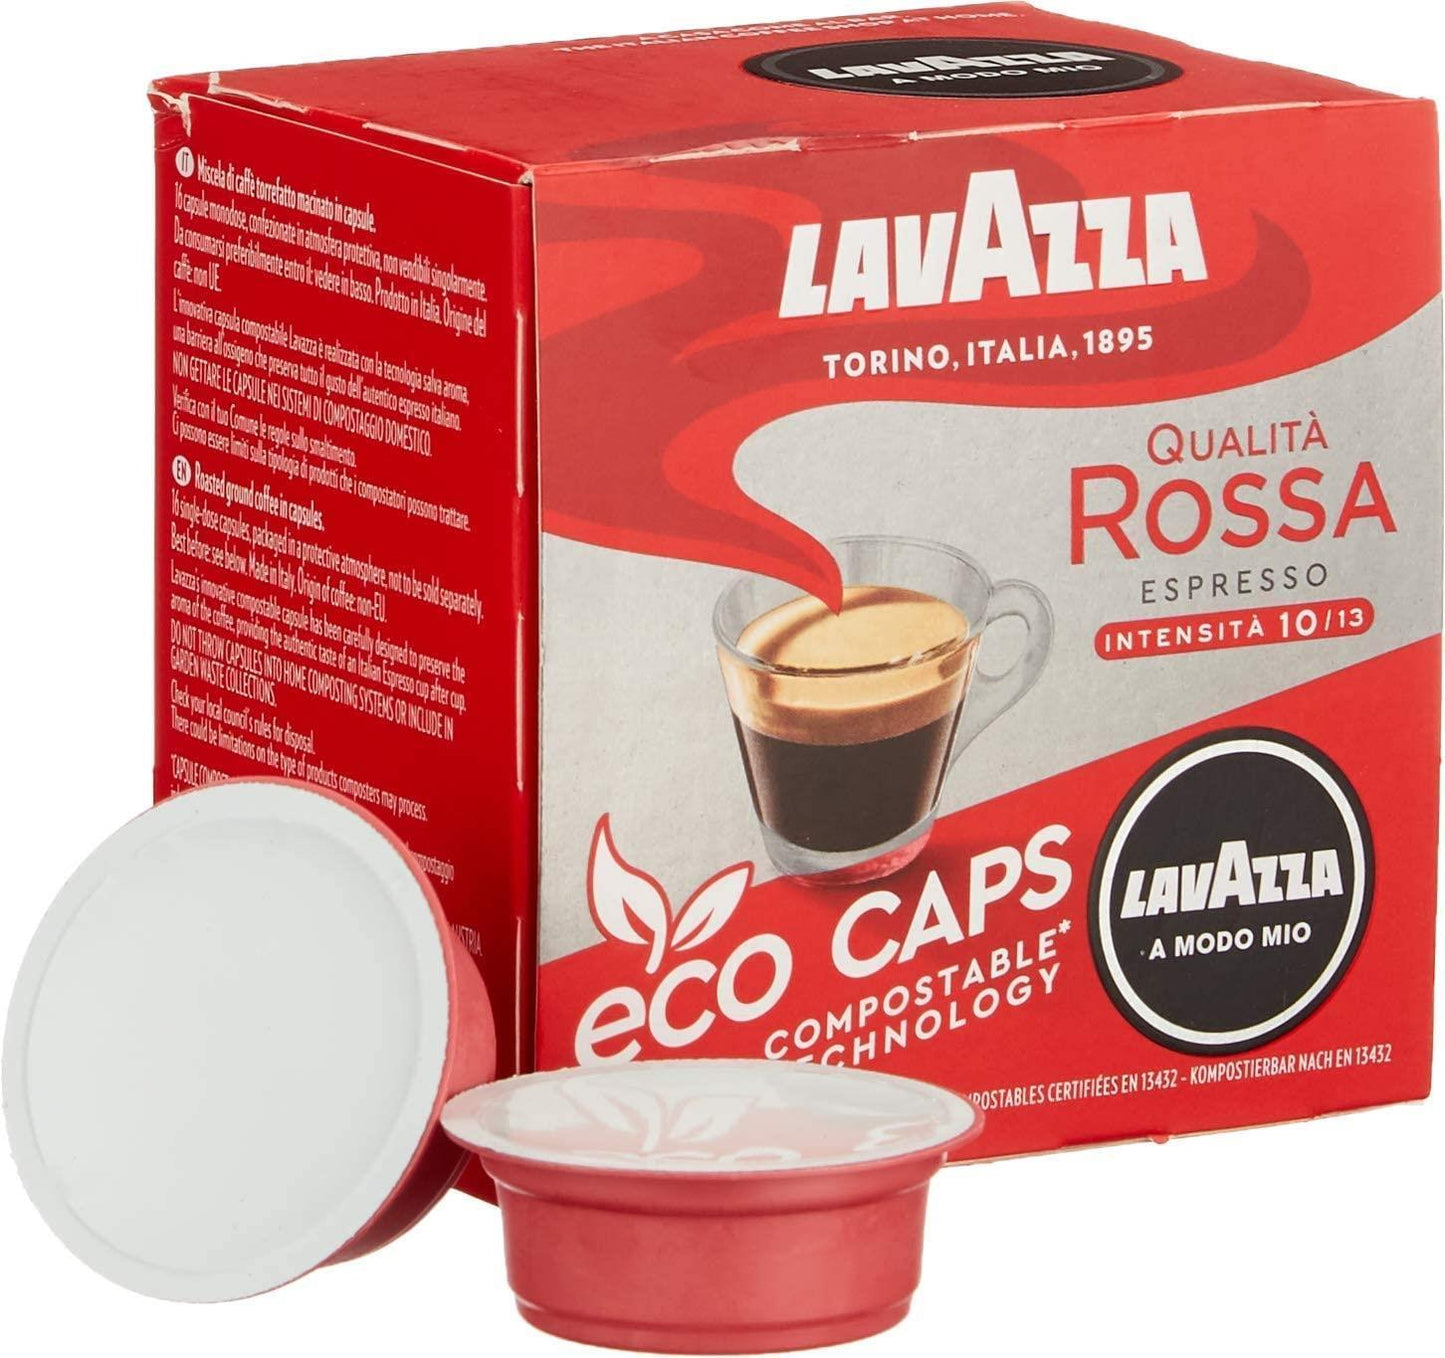 A Modo Mio Espresso Qualità Rossa 16 capsules - LavAzza